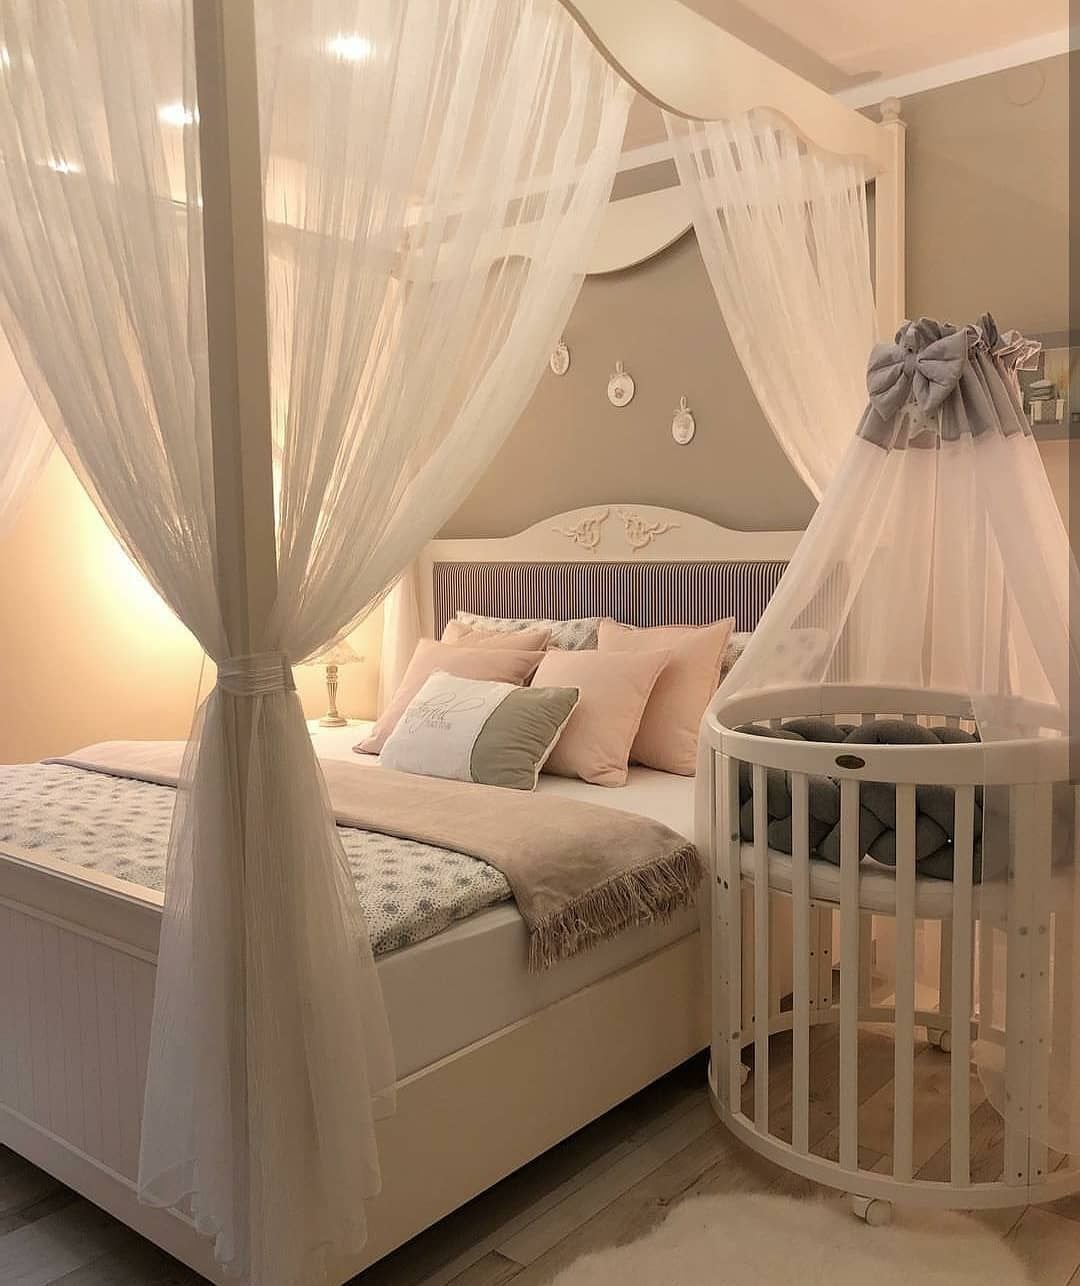 Интерьер спальни с детской кроваткой